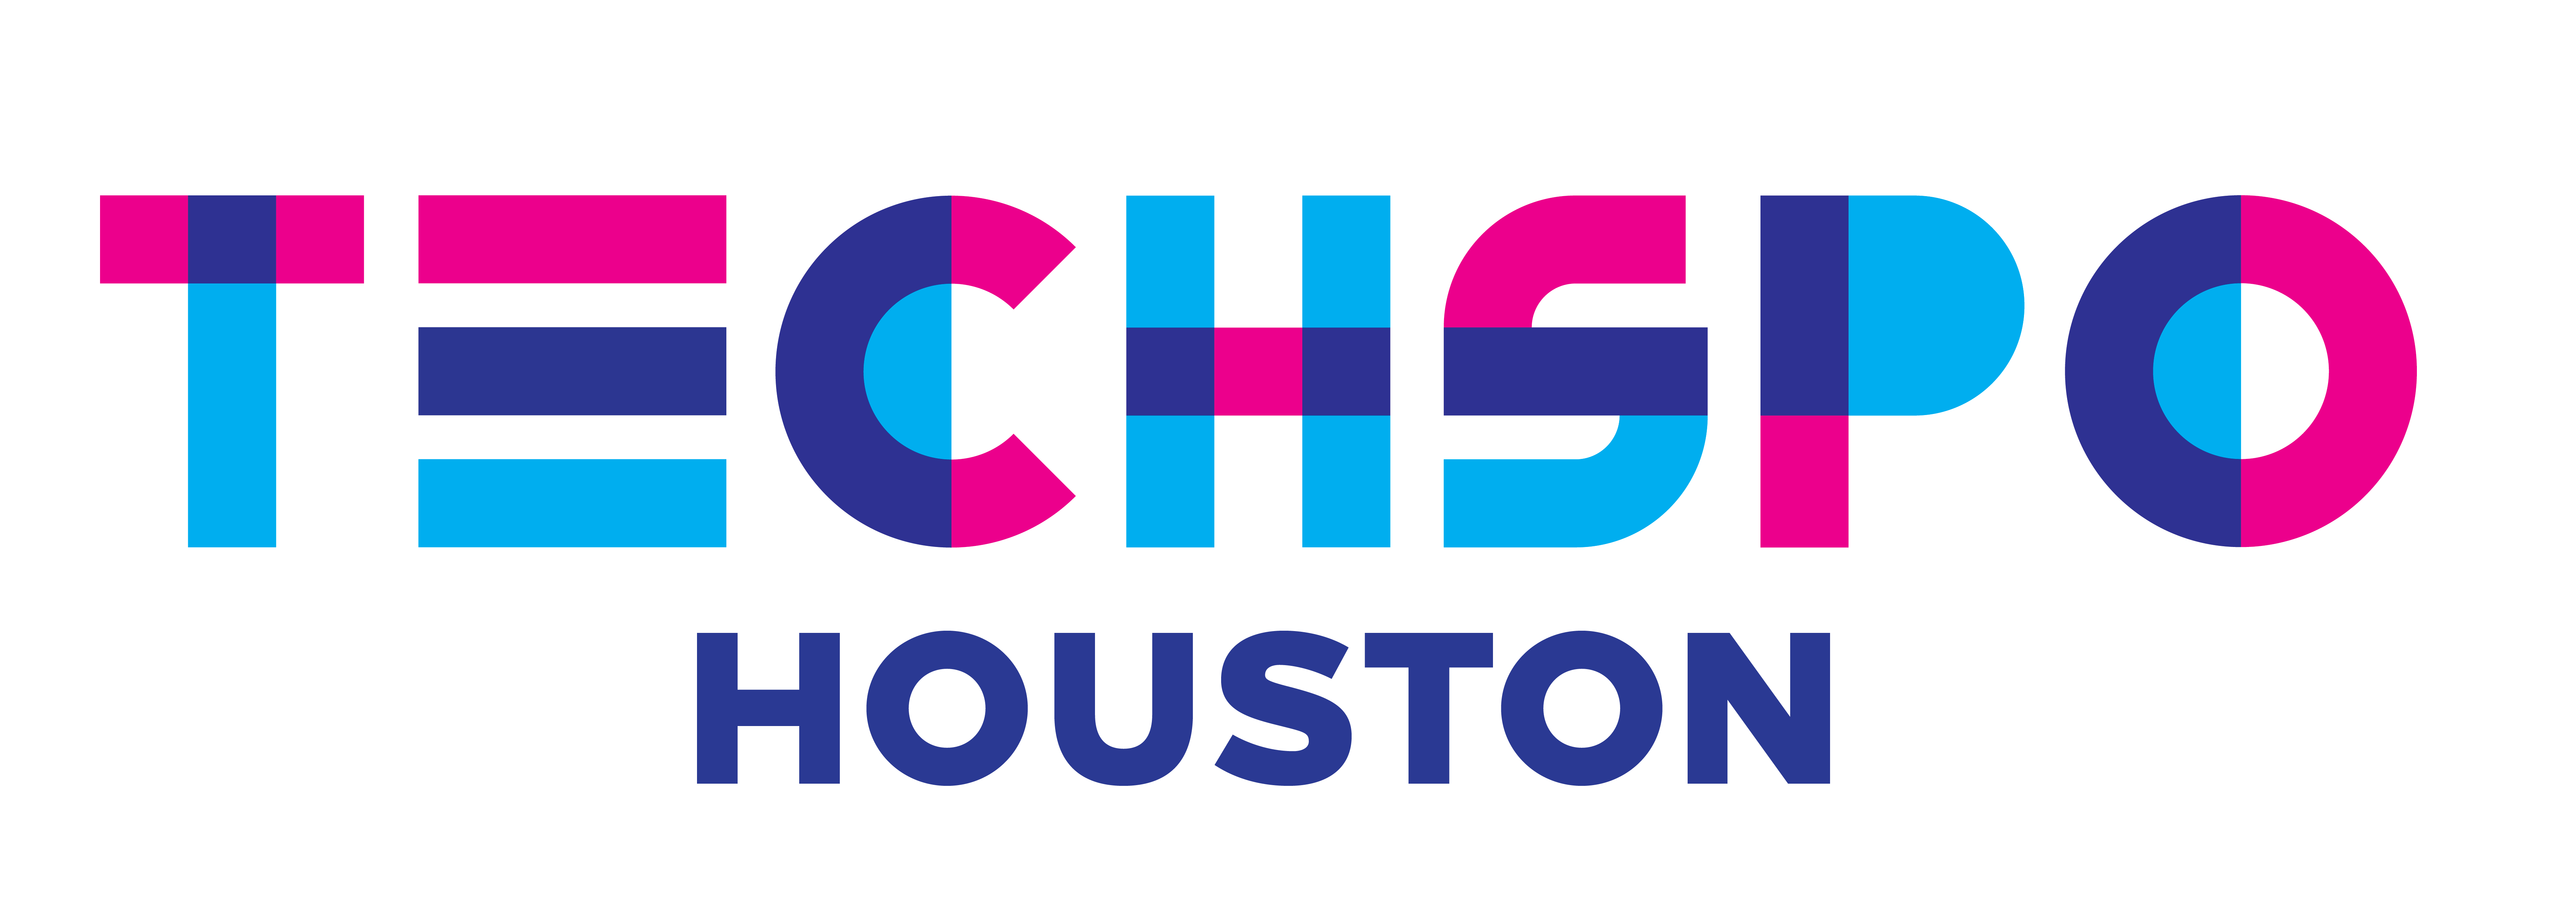 TECHSPO Houston 2022 Technology Expo (Internet ~ Mobile ~ AdTech ~ MarTech ~ SaaS), Houston, Texas, United States